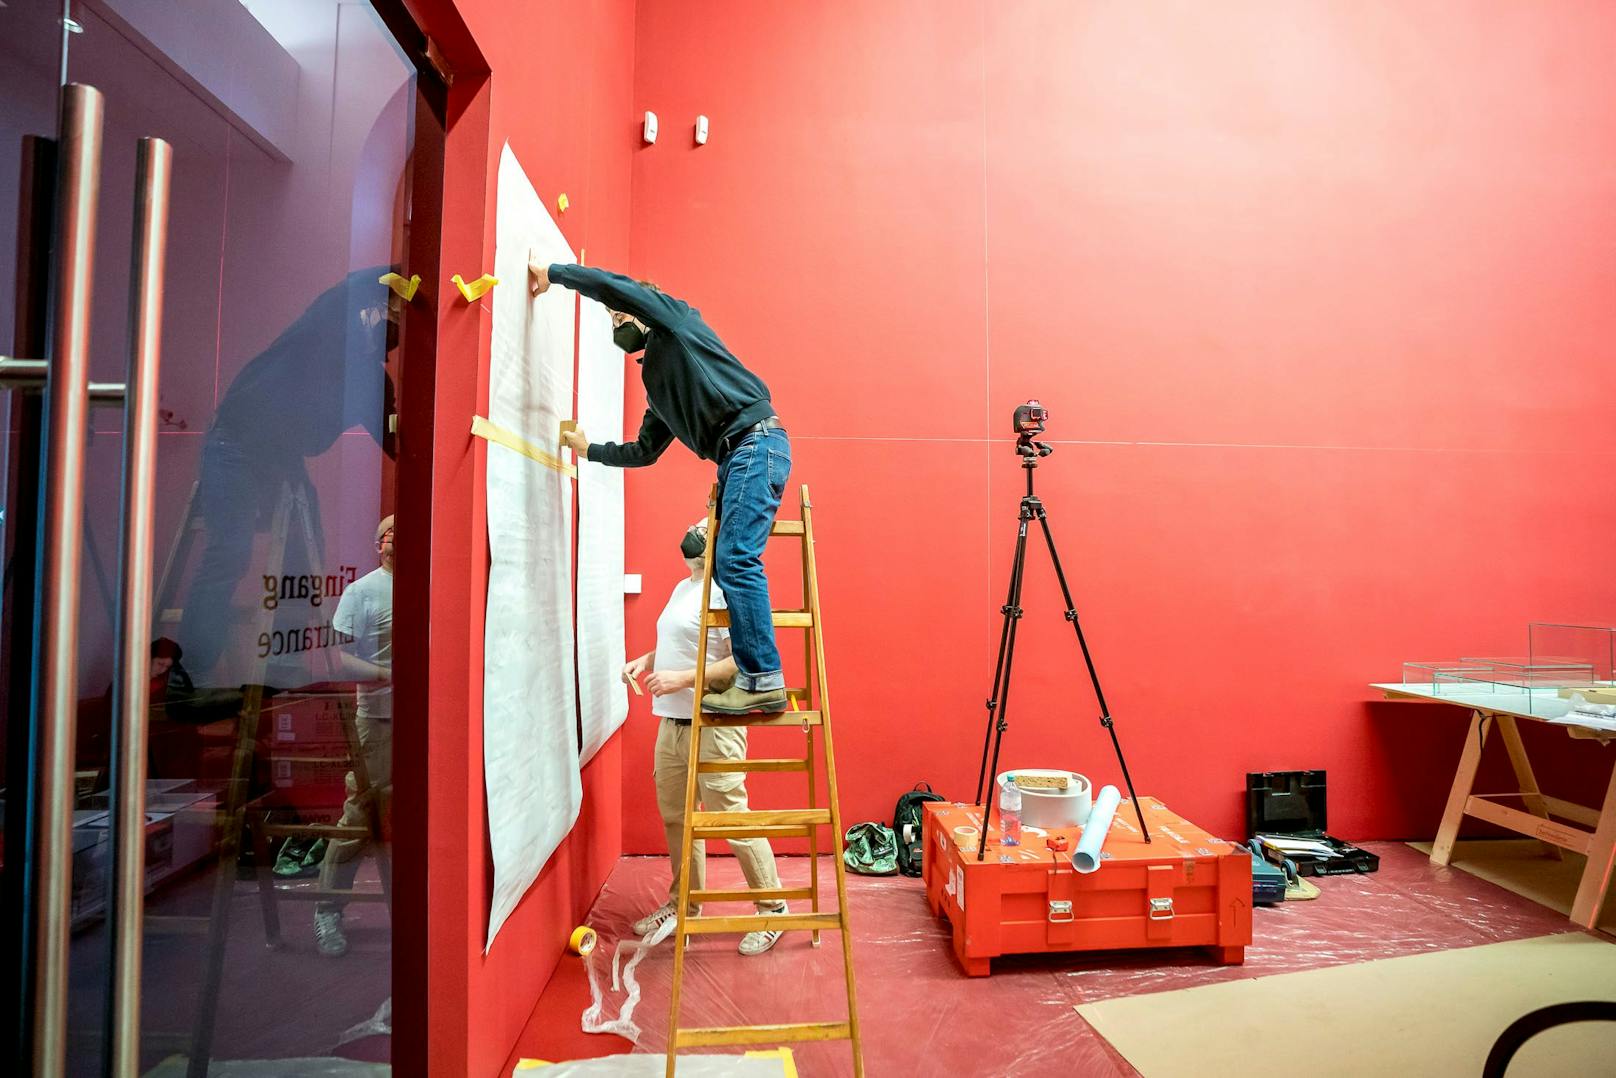 Der Ausstellungstext wird an den roten Wänden links und rechts angebracht.